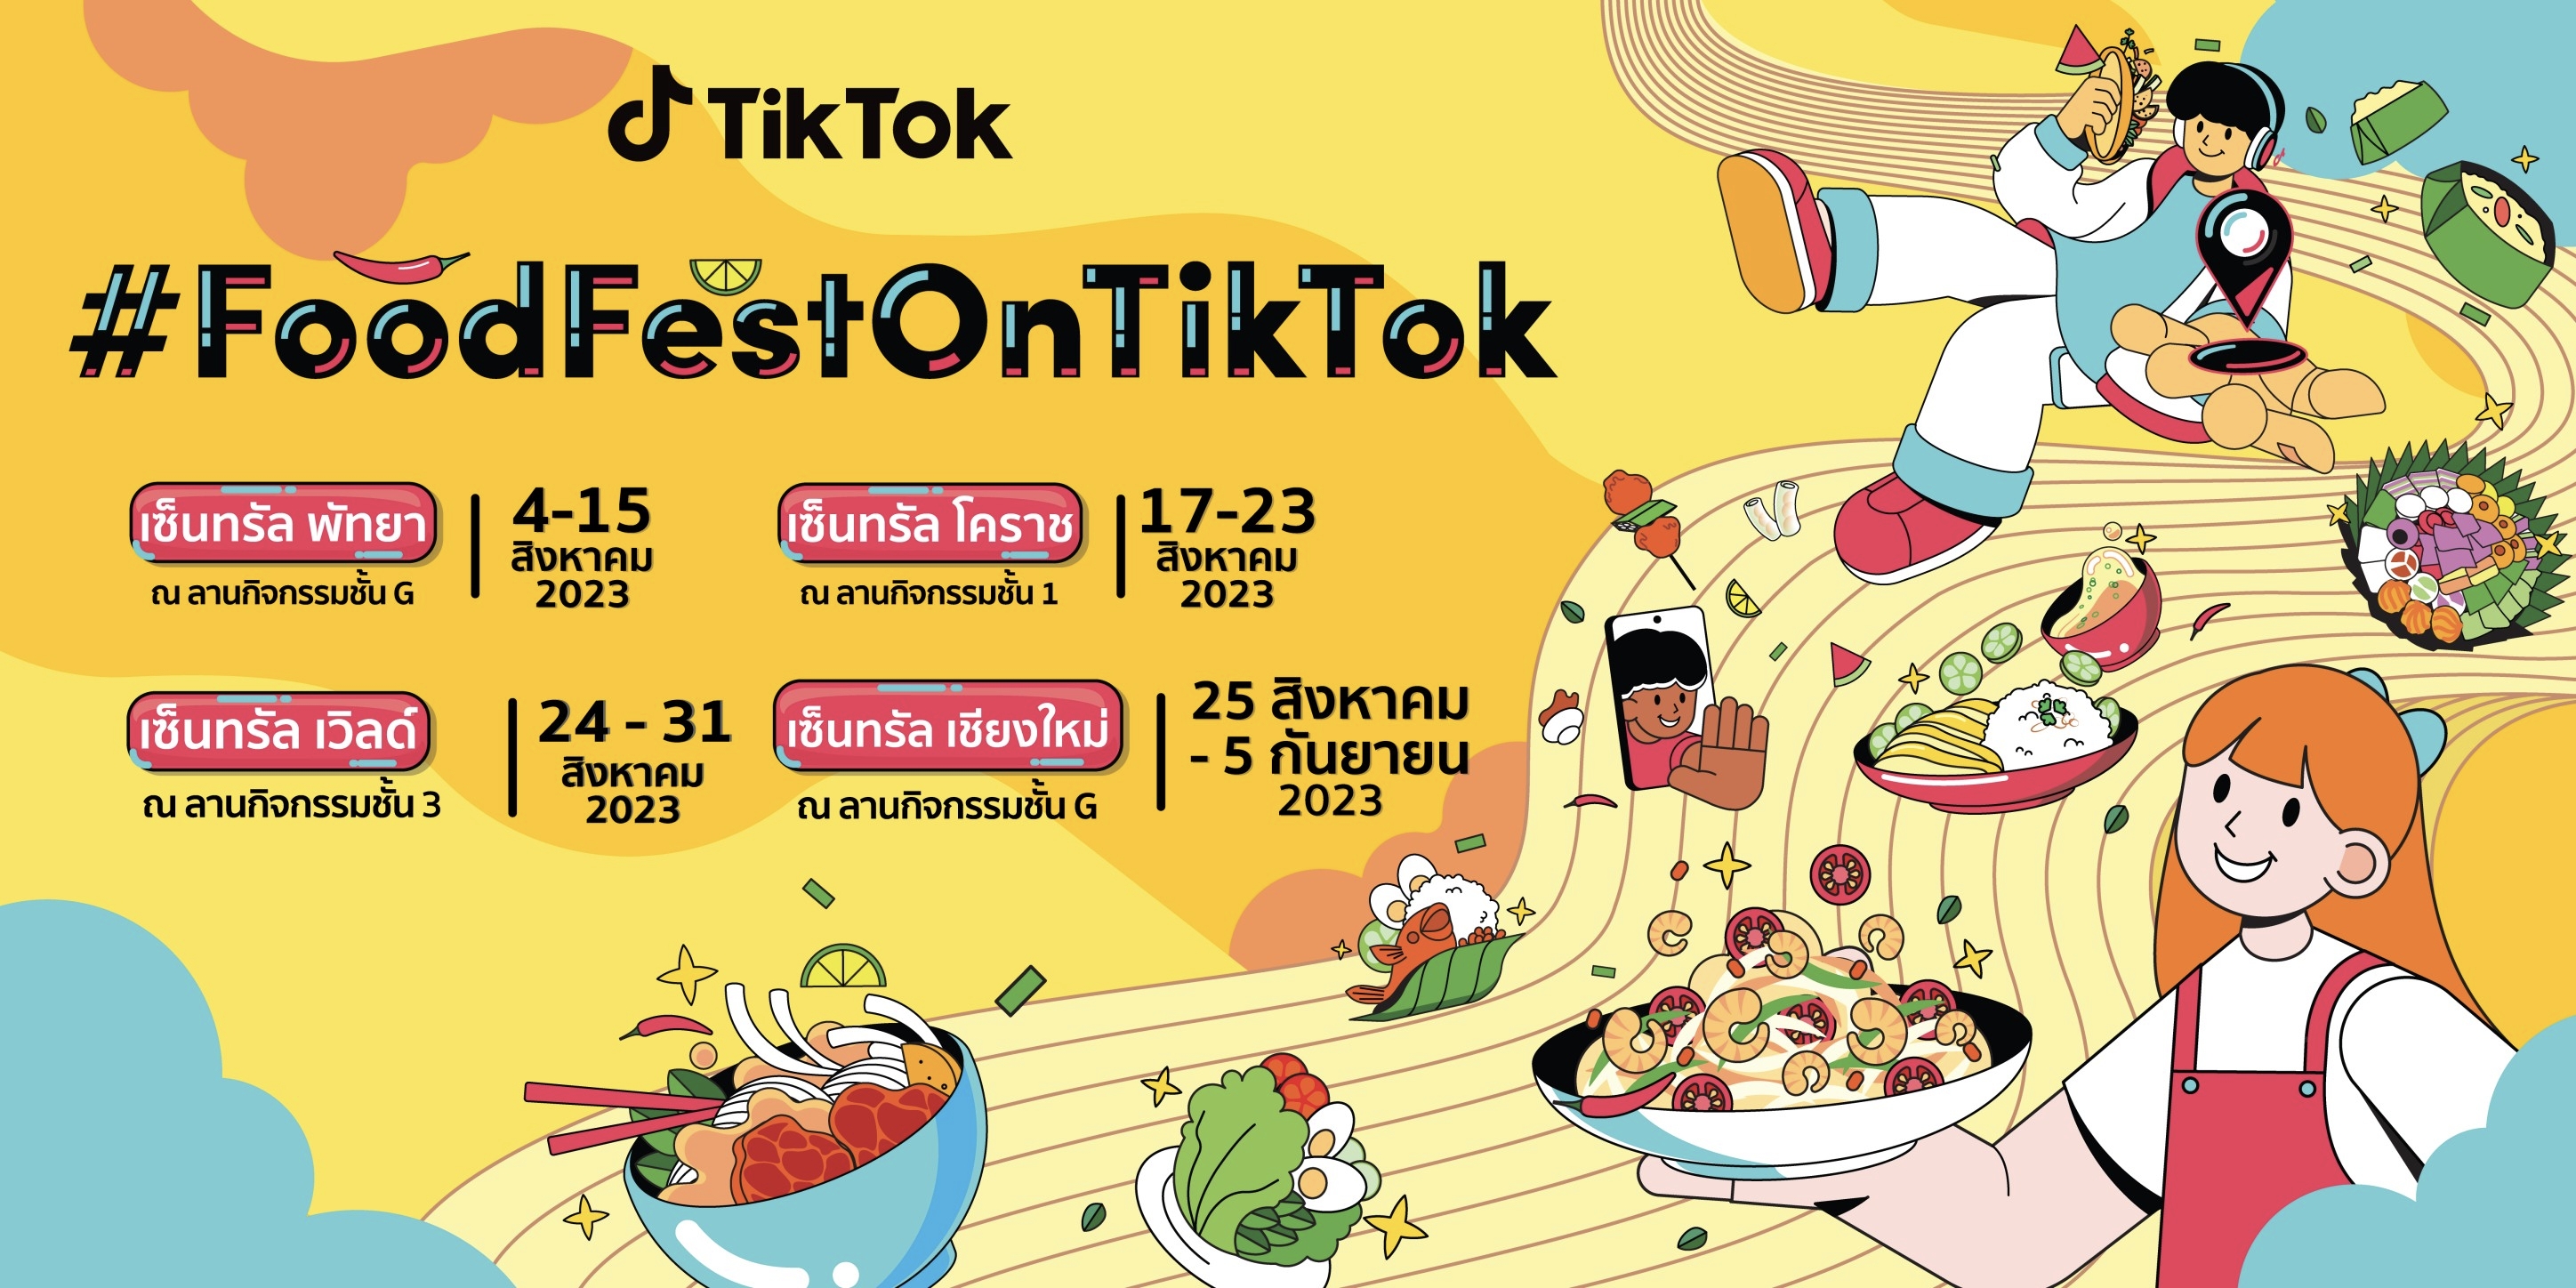 TikTok สร้างวัฒนธรรมฟู้ดดี้มาแรง พร้อมต่อยอดความสำเร็จ ส่งเสริม SME ทั่วประเทศ กับ FoodFestOnTikTok